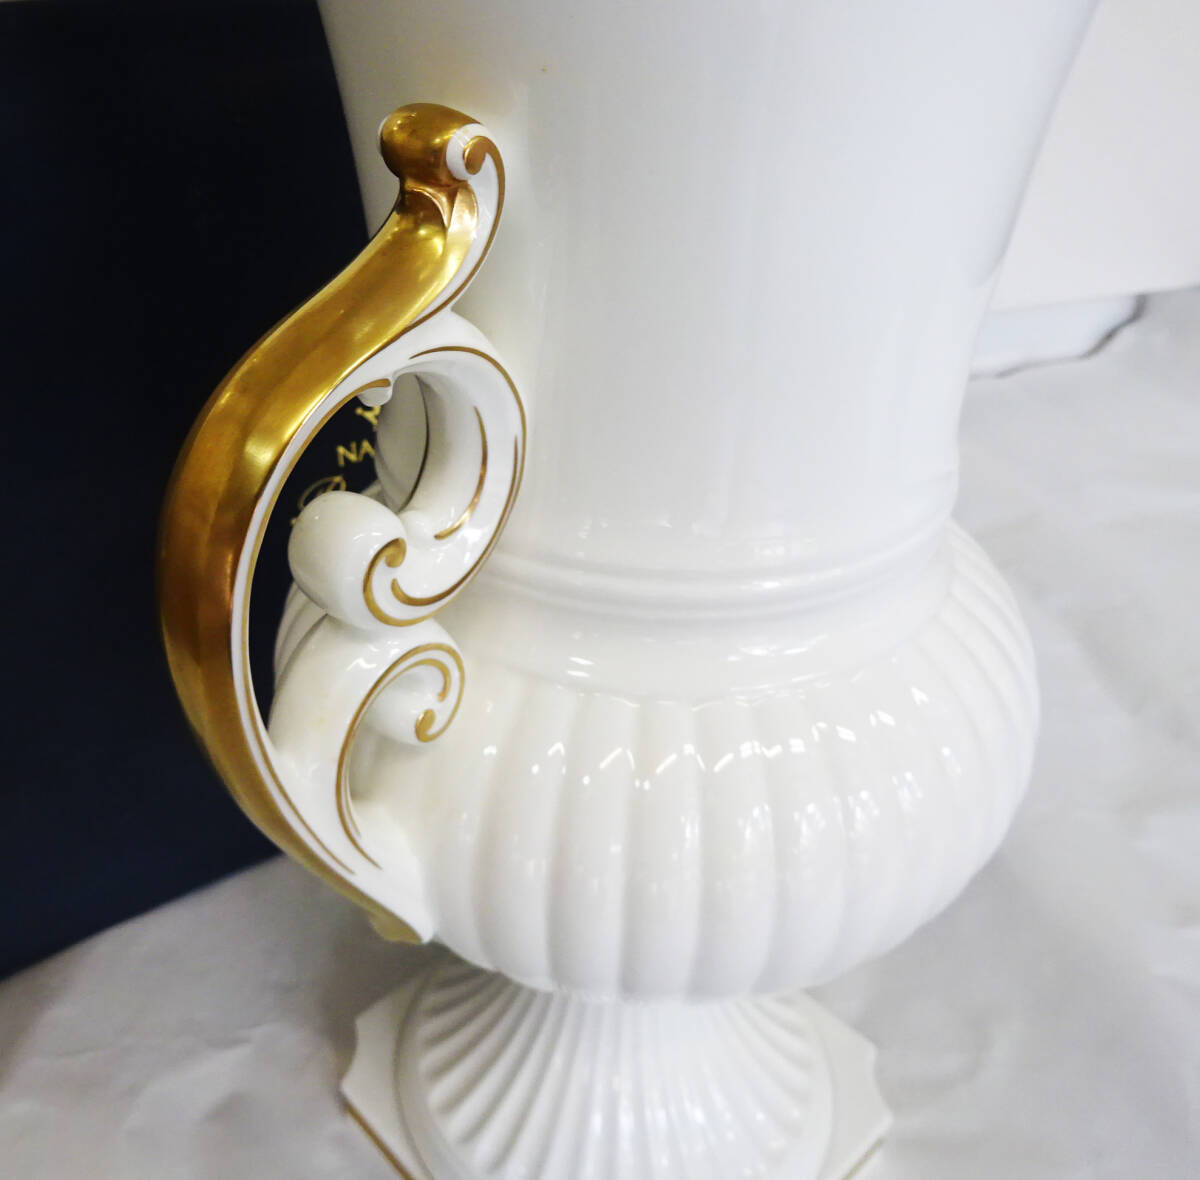 ◆ 未使用 NARUMI ナルミ ボーンチャイナ ロマネスク 花瓶 王朝 白×金 高級花瓶 約41㎝ ◆